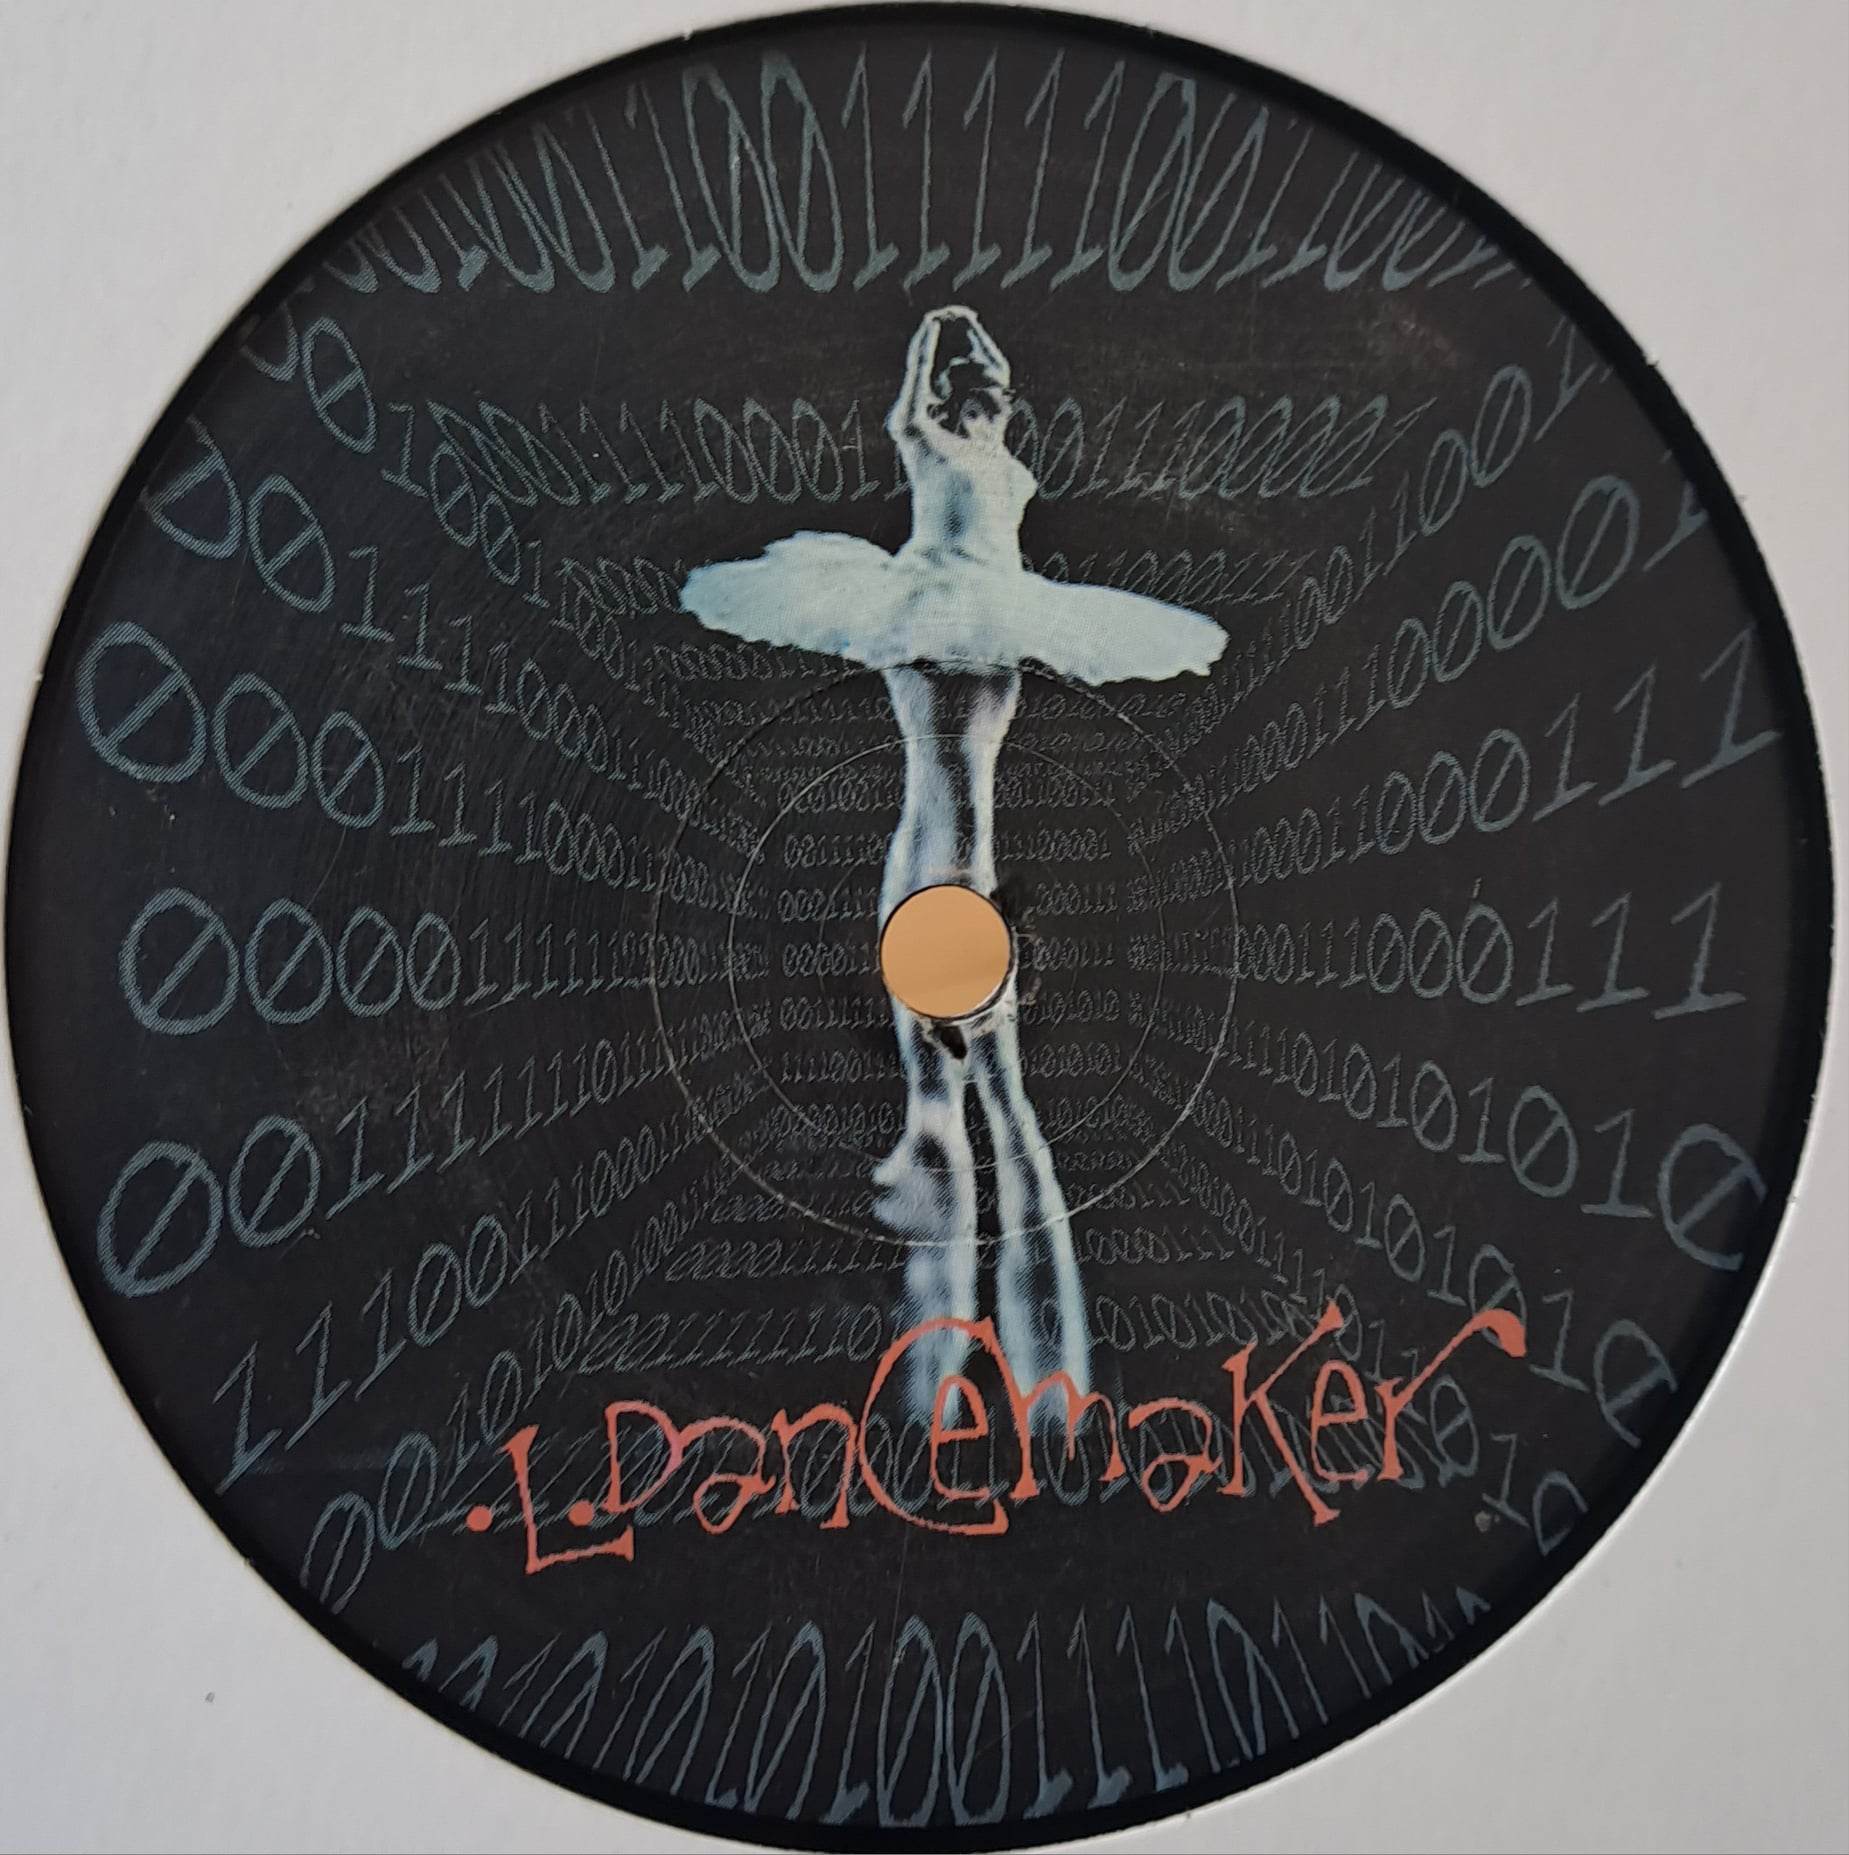 Dancemaker 001 - vinyle freetekno